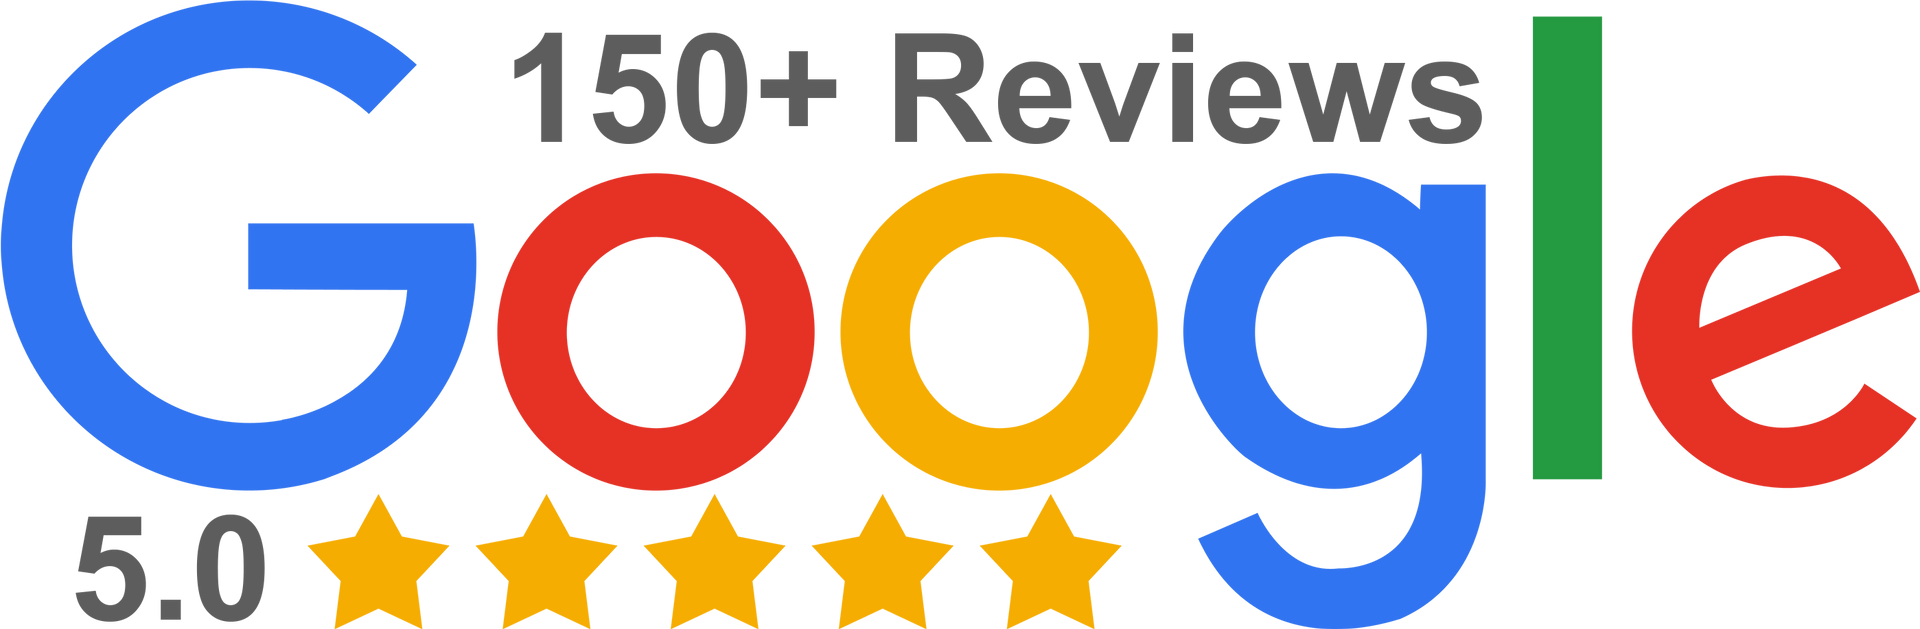 150+ Google Reviews Logo